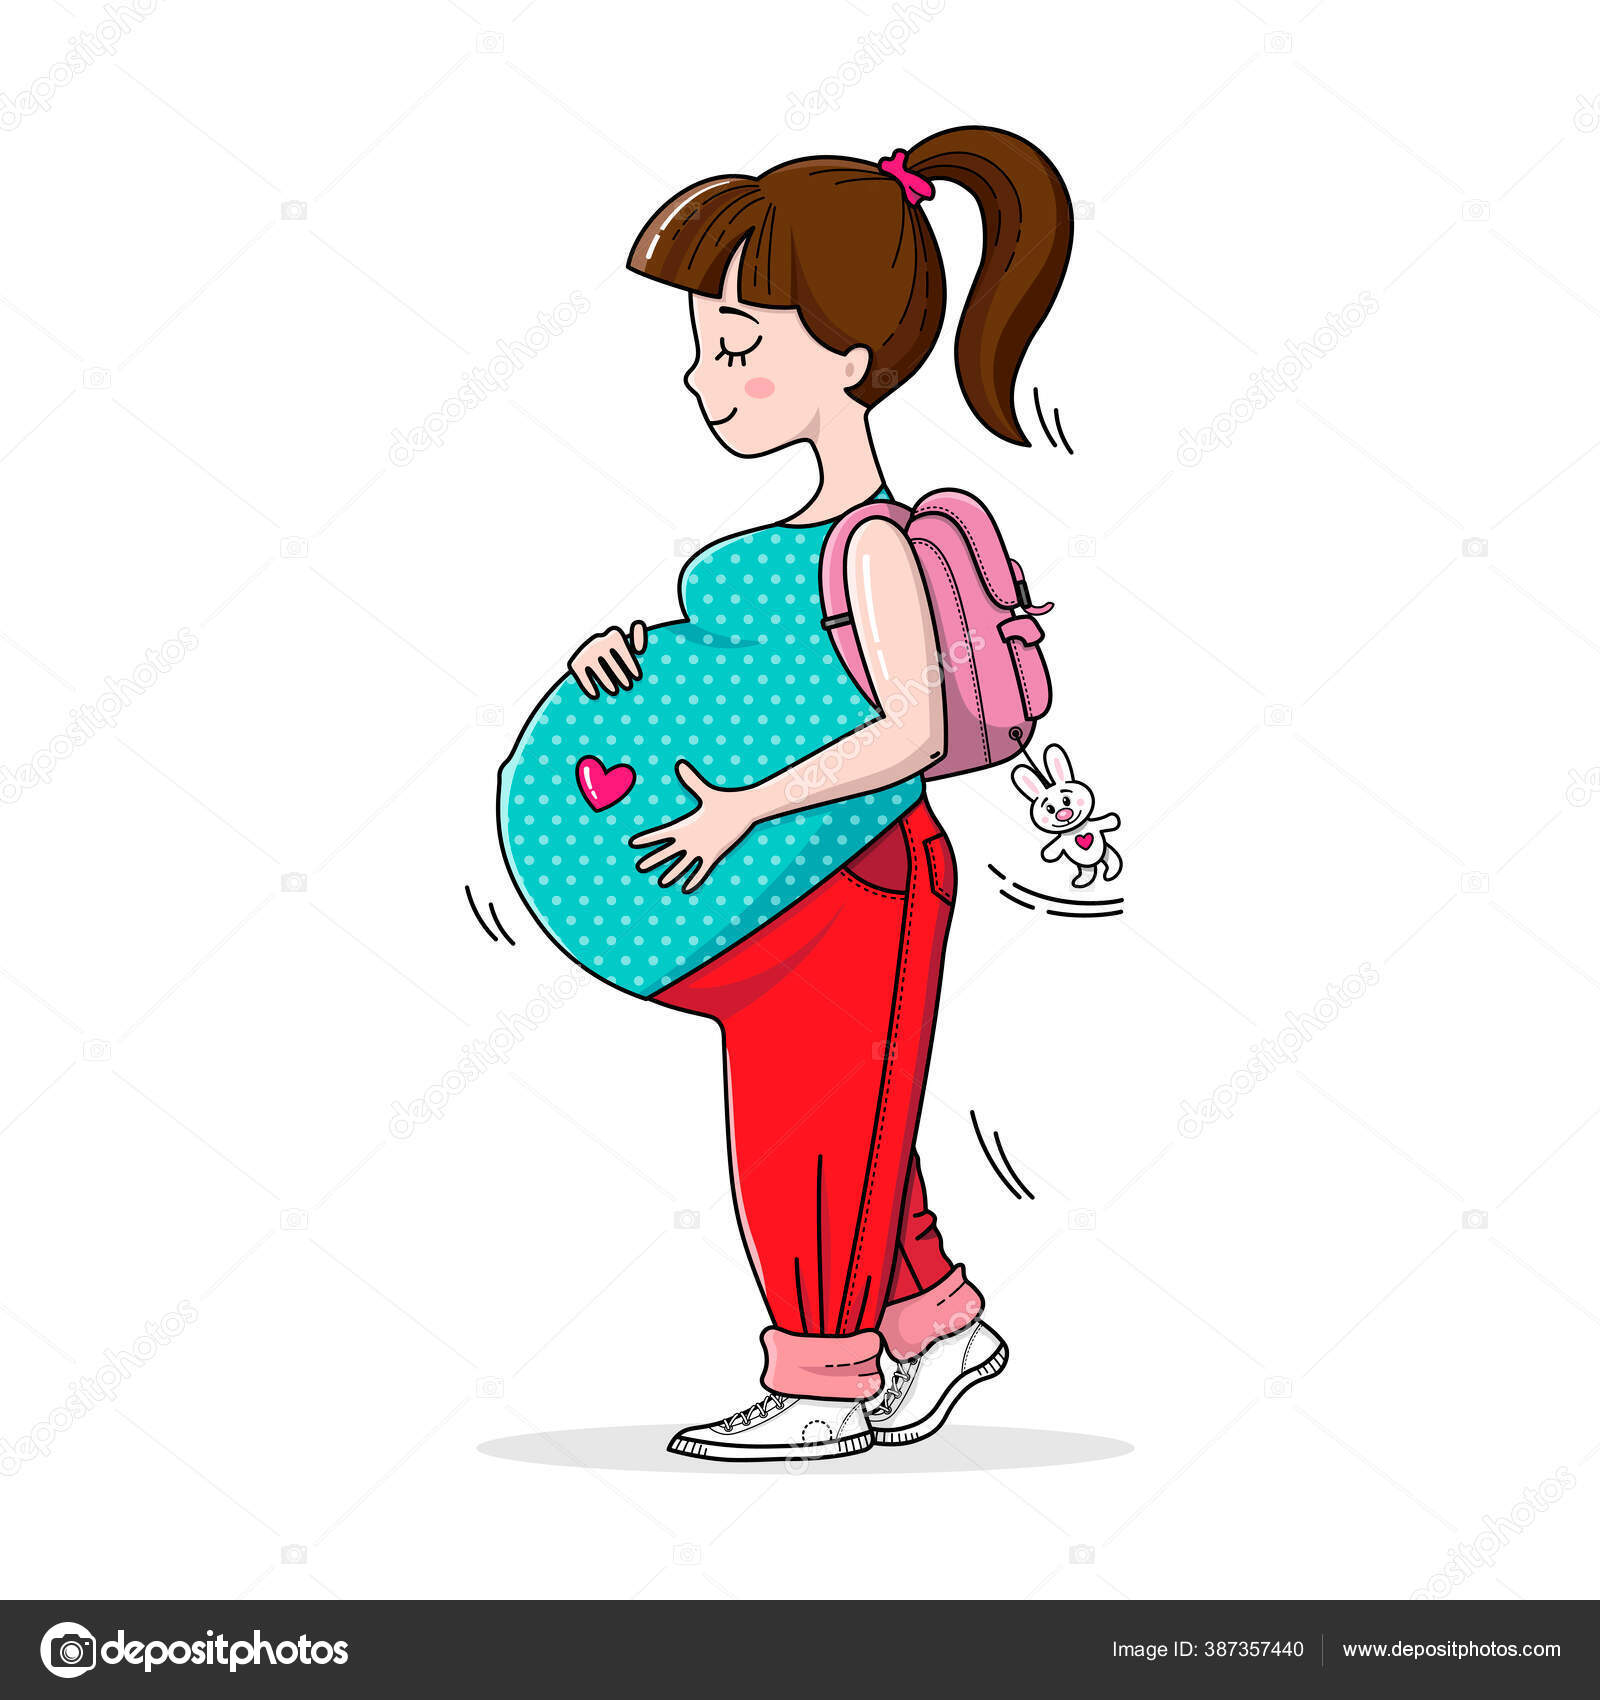 Adolescente embarazada imágenes de stock de arte vectorial | Depositphotos